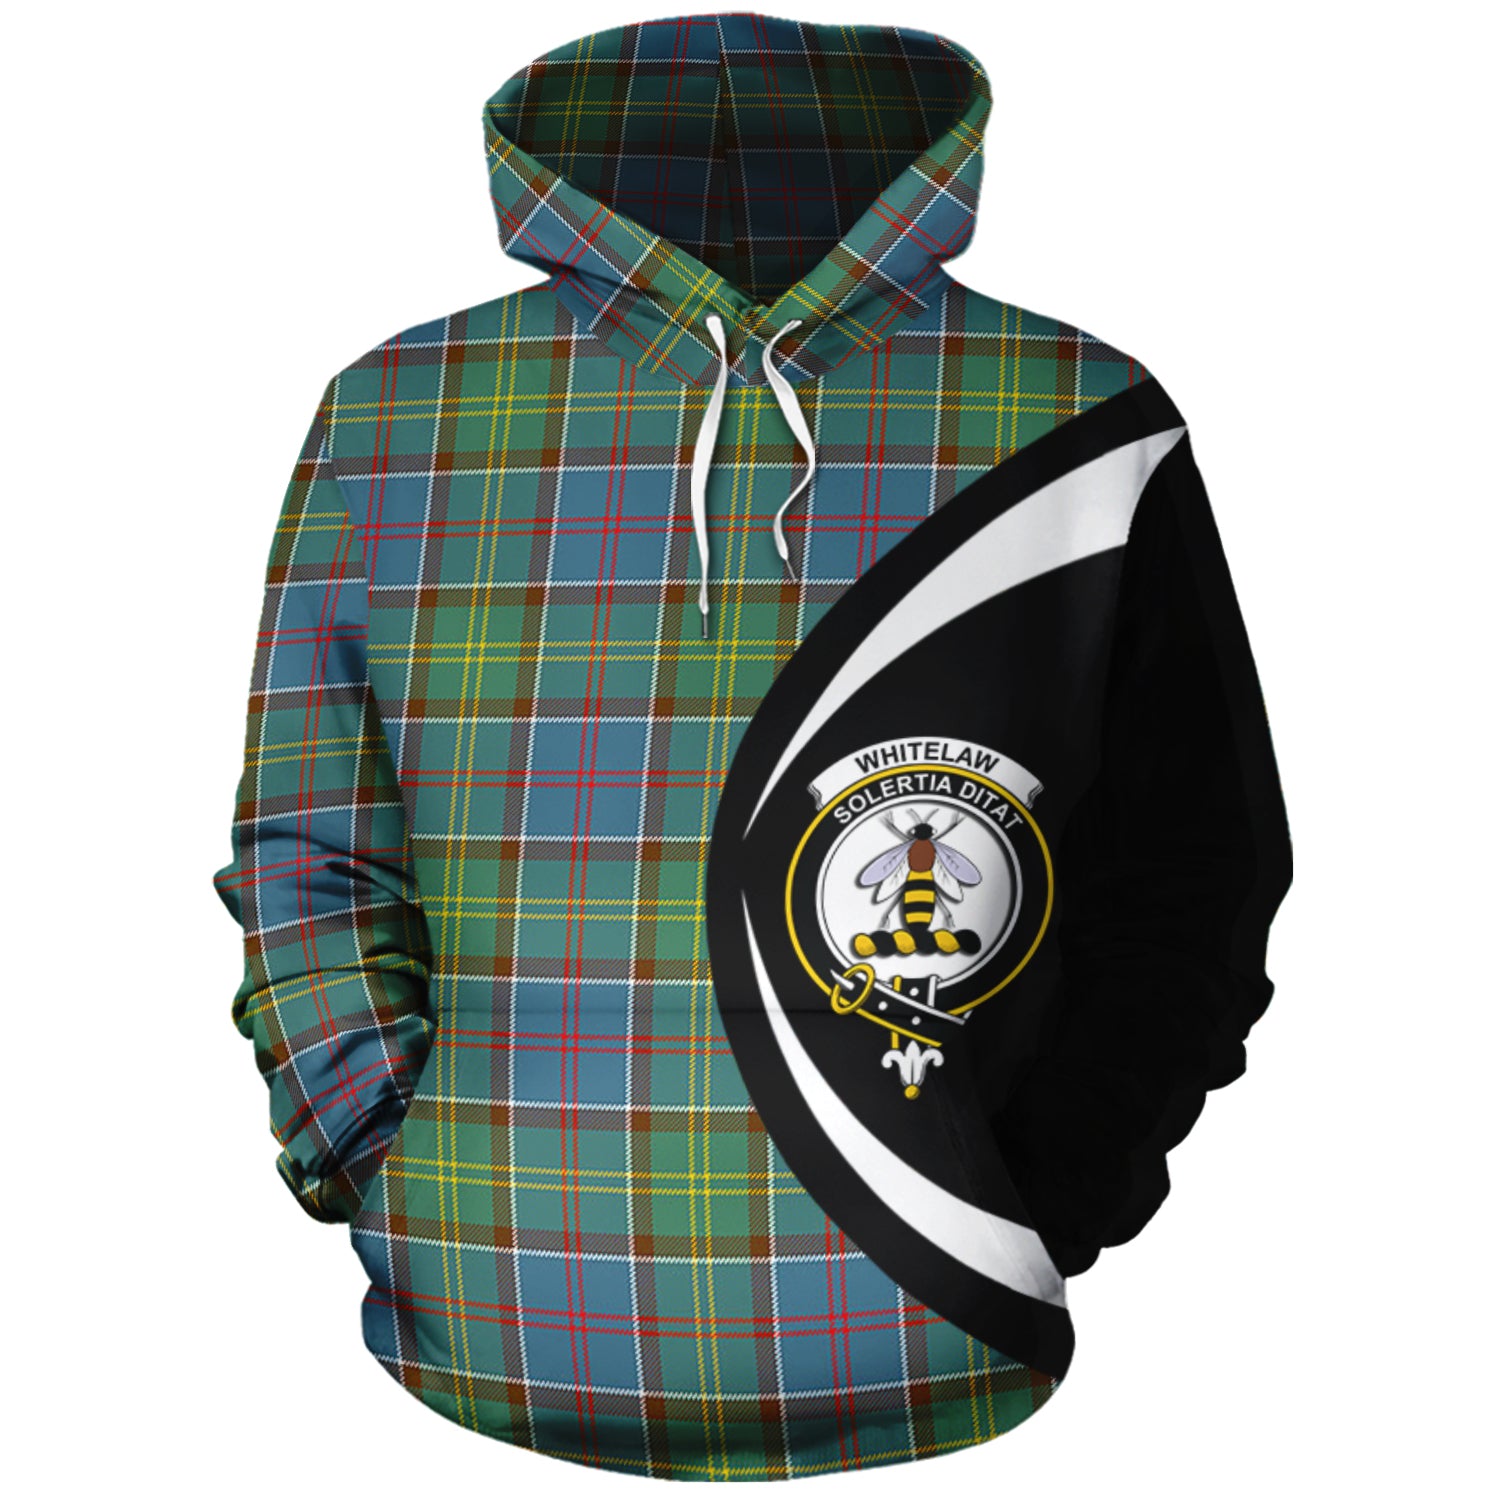 scottish-whitelaw-clan-crest-circle-style-tartan-hoodie